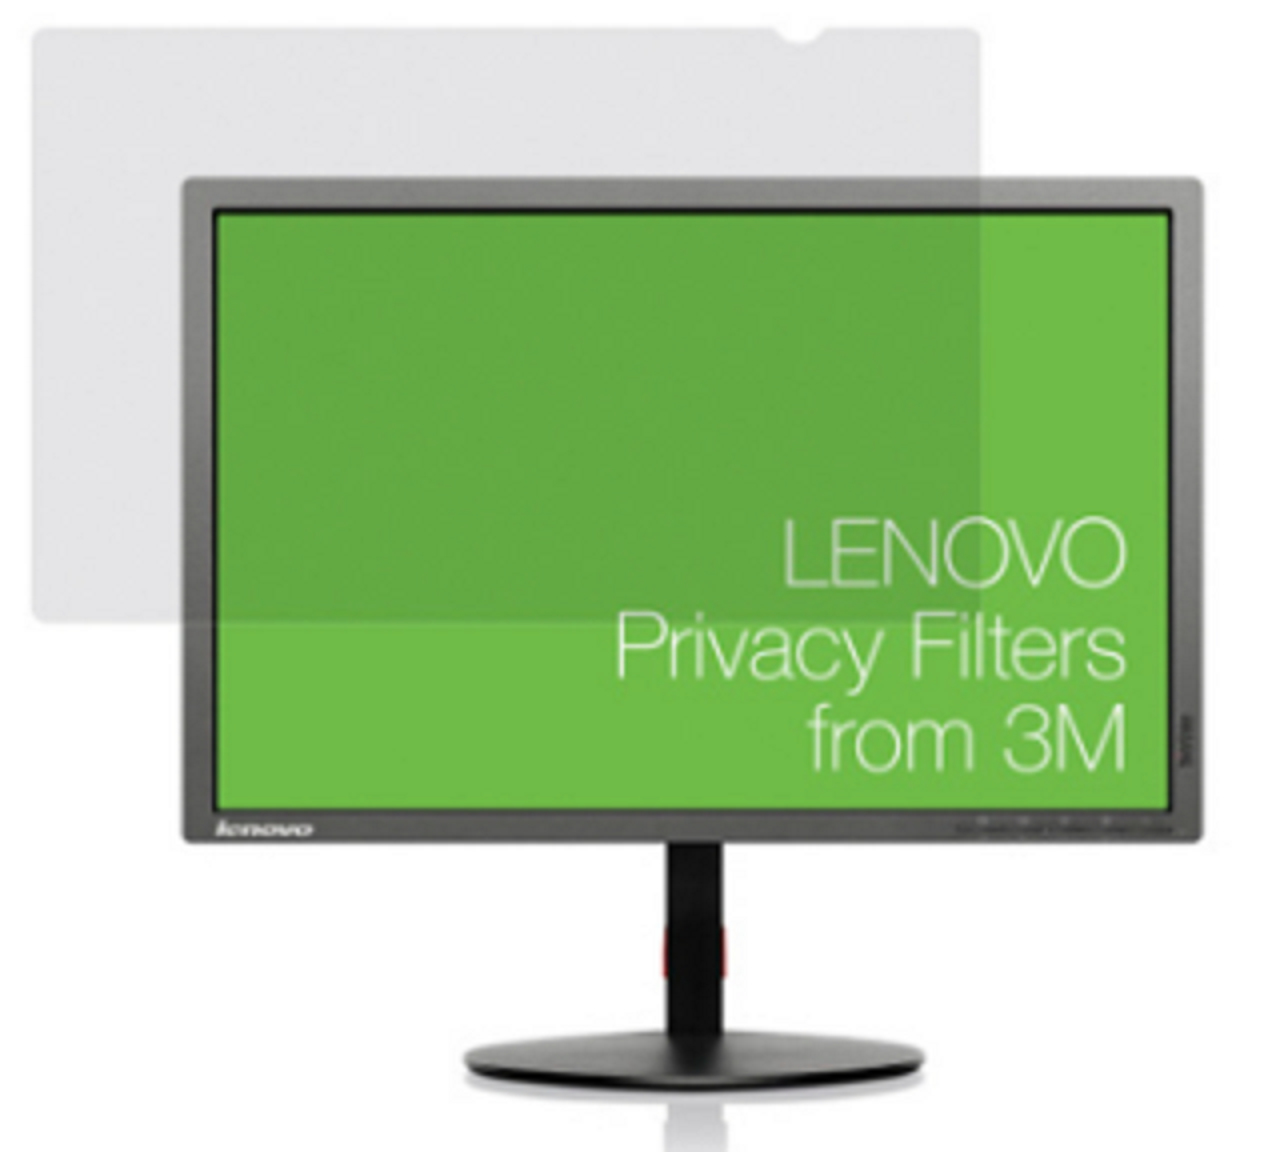 Lenovo 3M PF23.8W9 - Blickschutzfilter für Bildschirme - 60.5 cm wide (23,8 Zoll Breitbild)